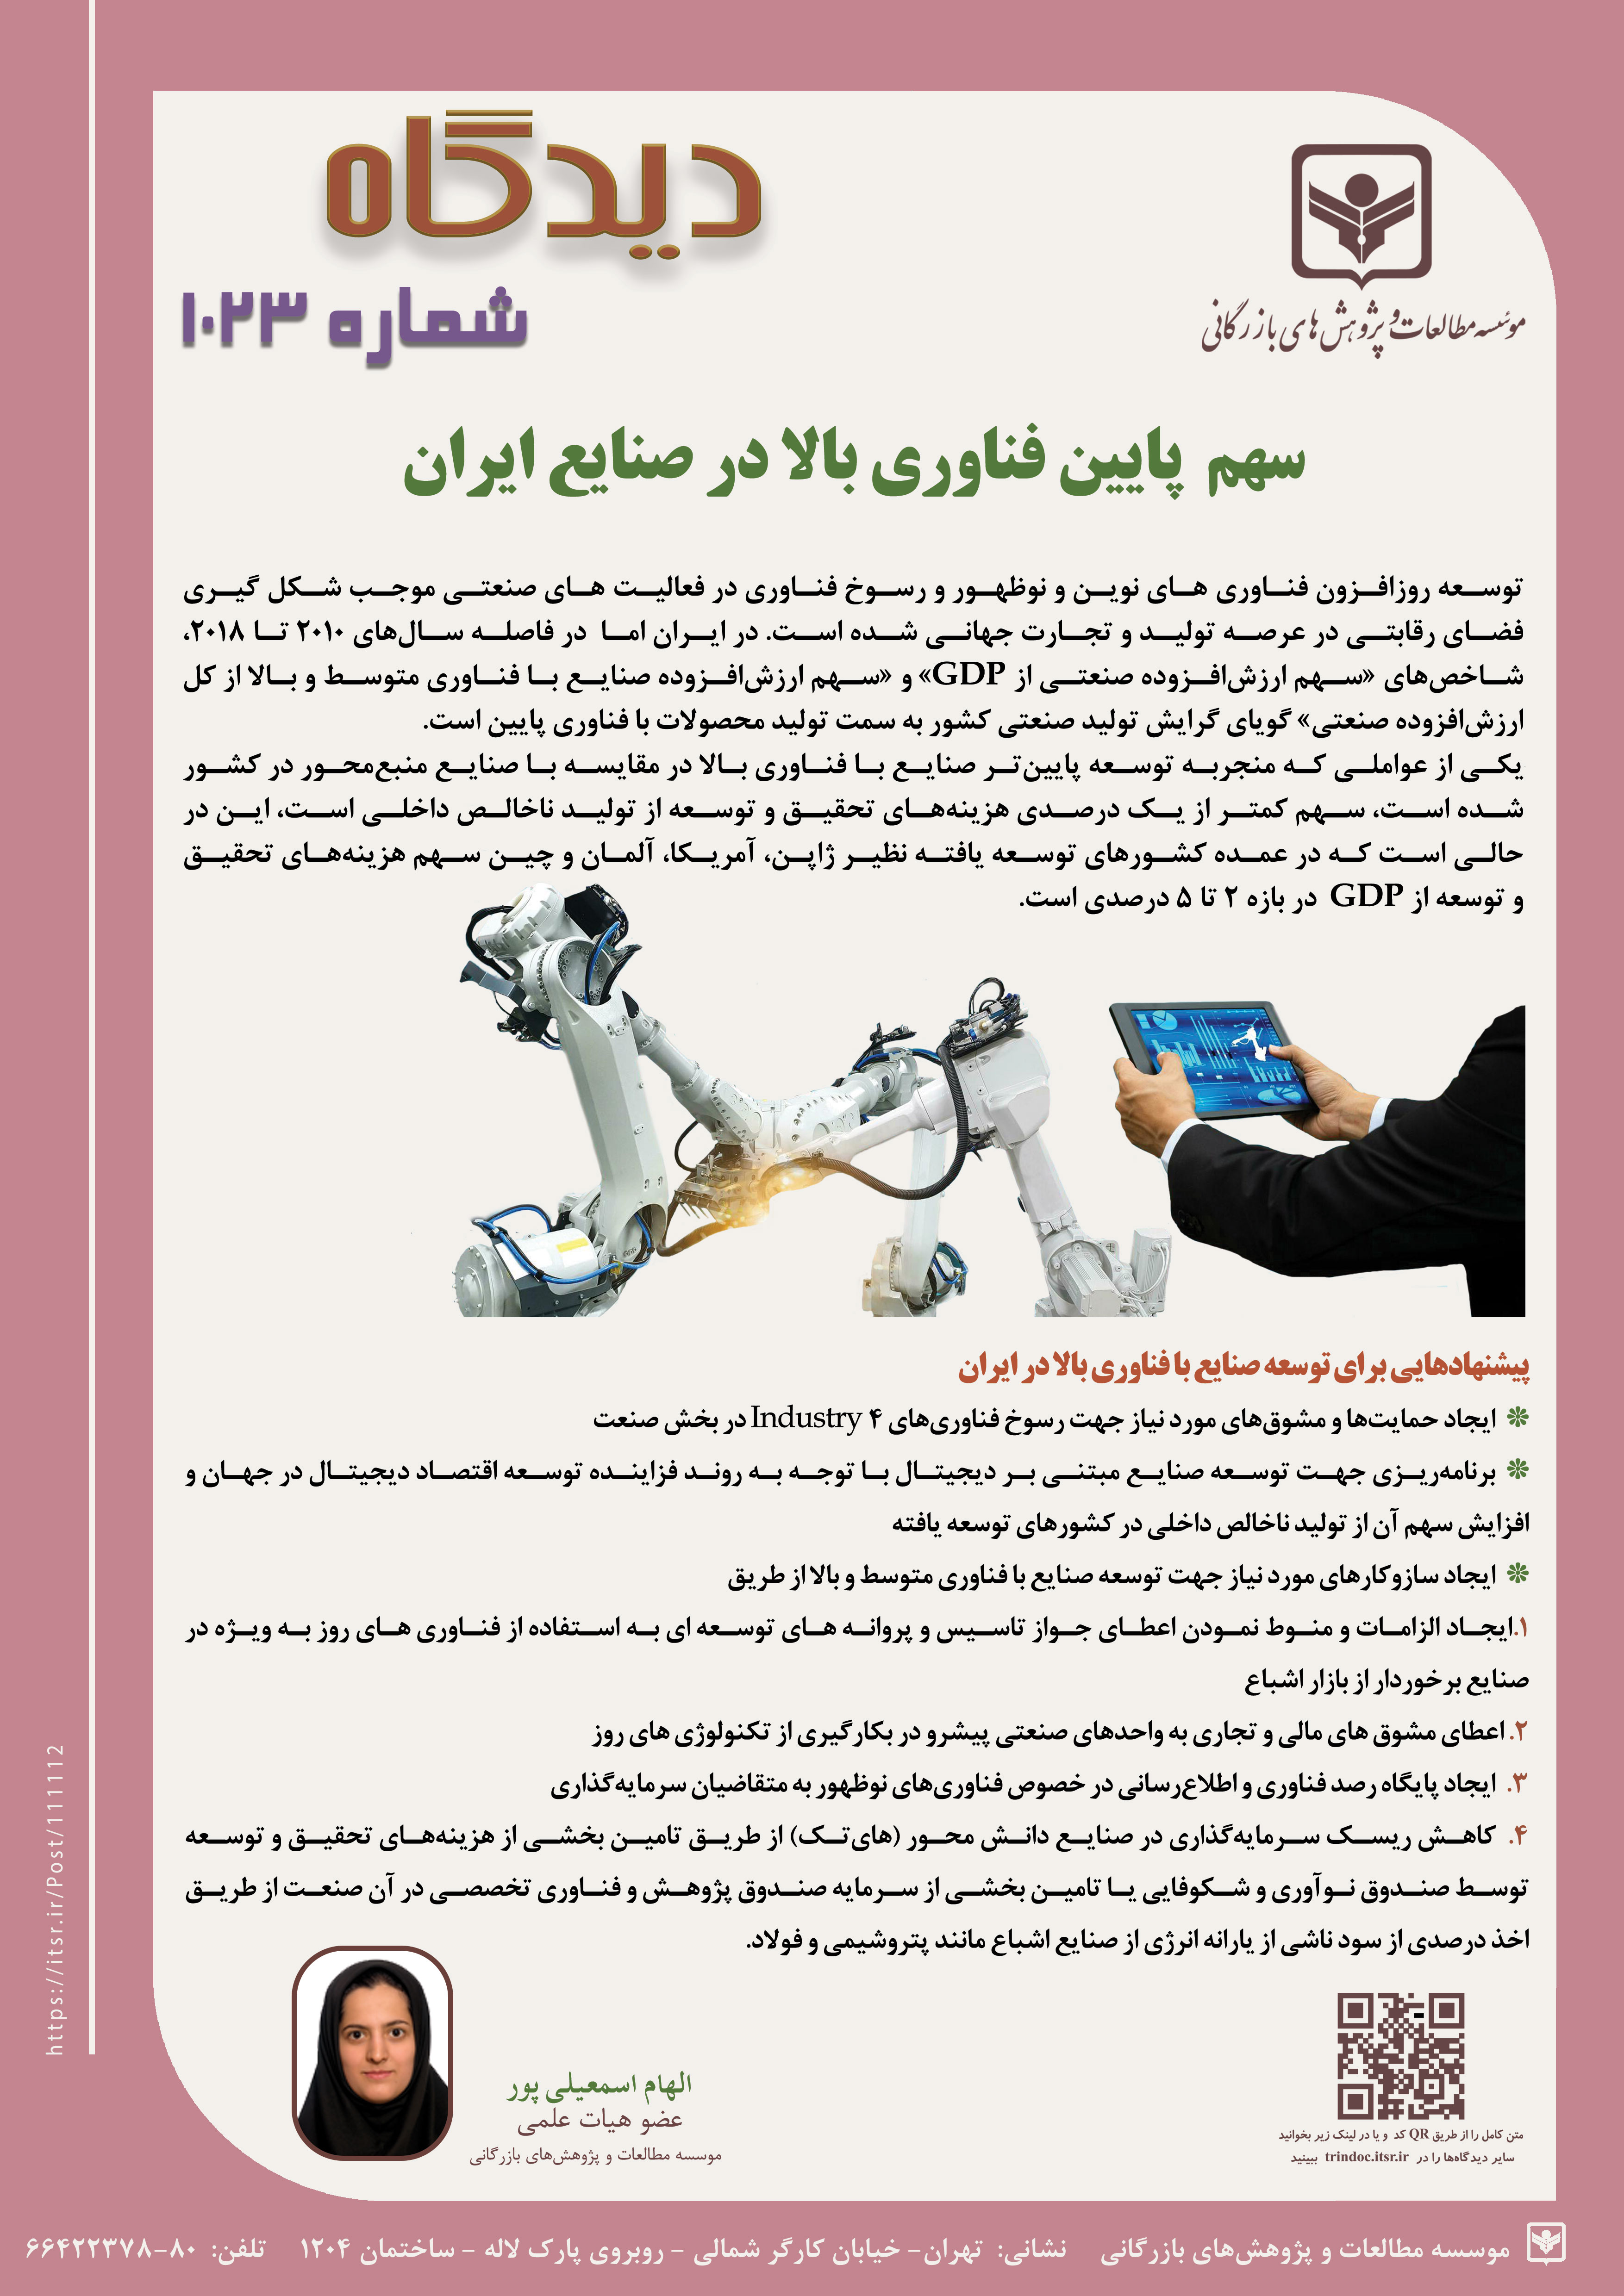 دیدگاه 1023: سهم پایین فناوری بالا در صنایع ایران